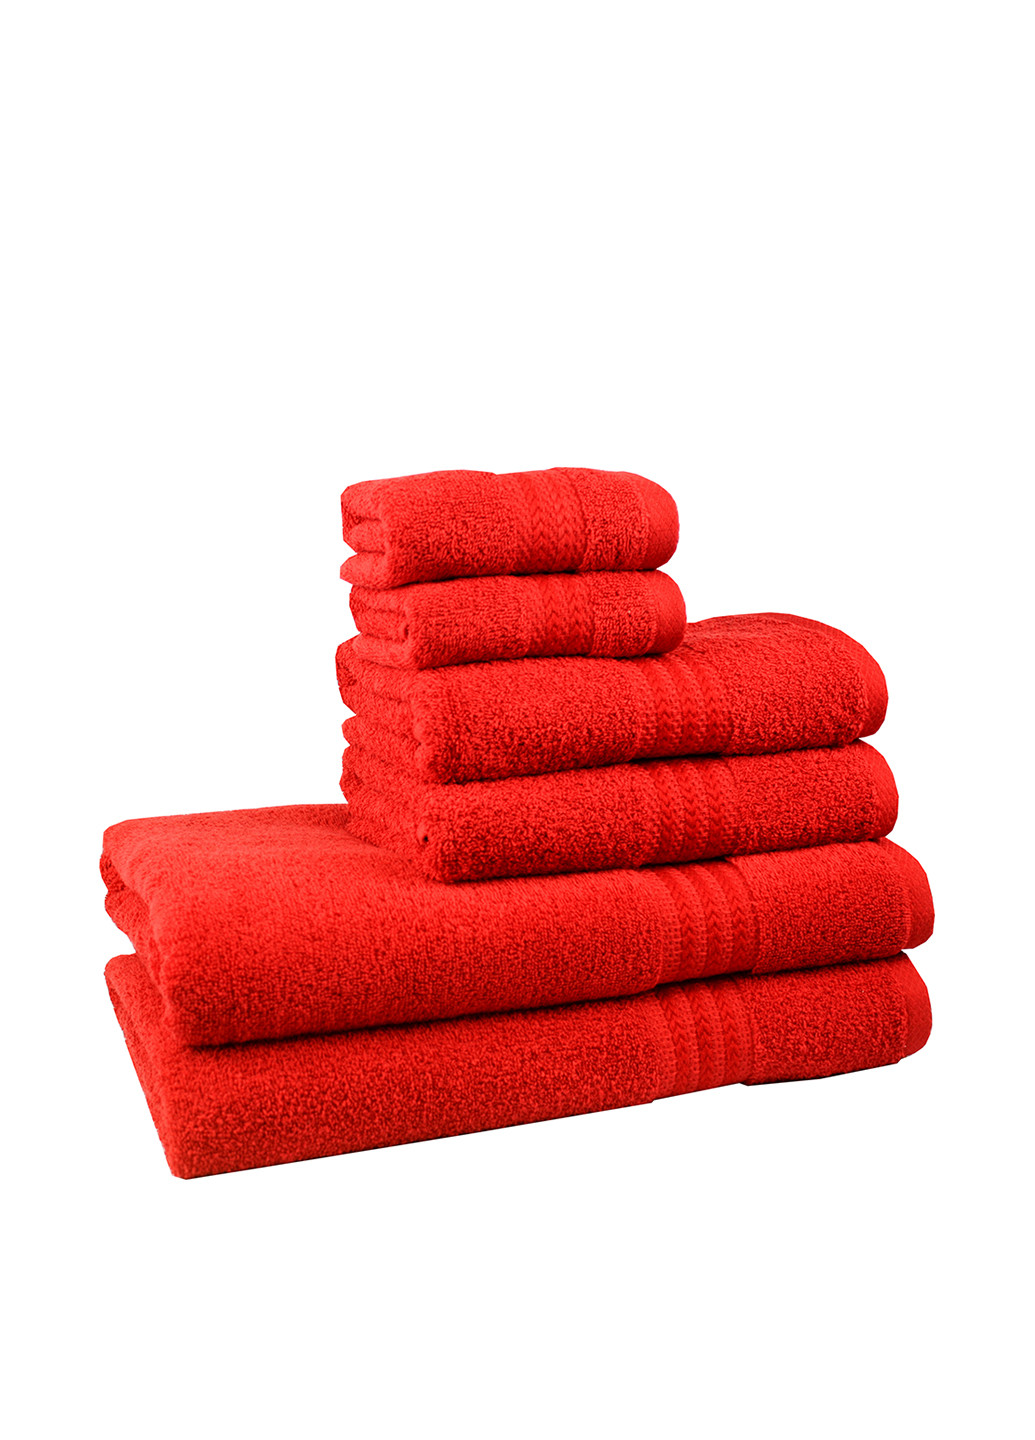 Hobby полотенце, 50х90 см полоска красный производство - Турция